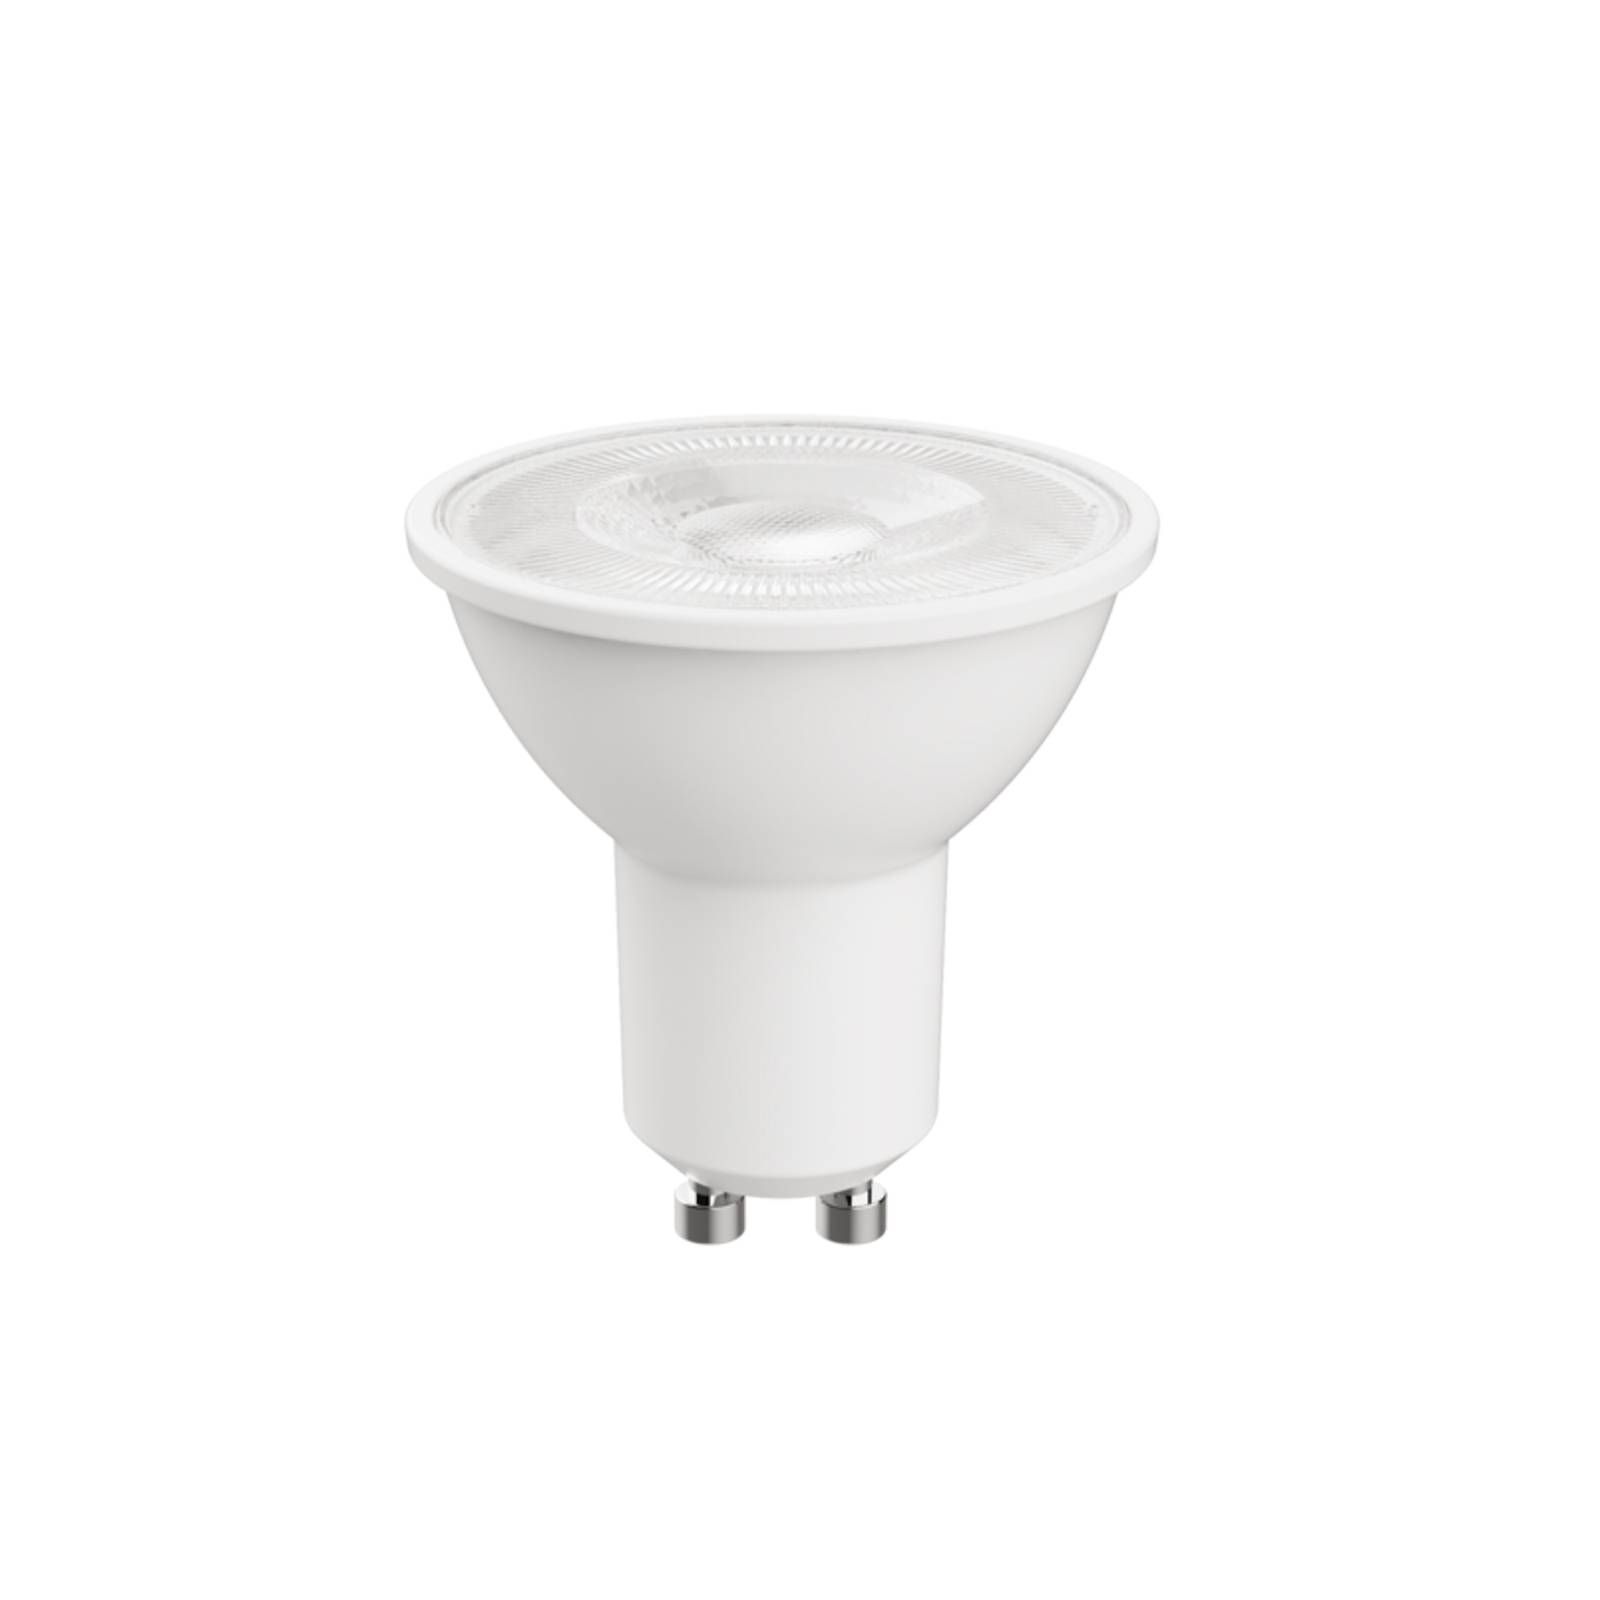 Arcchio LED žiarovka GU10 2 700 K nestmievateľná, plast, GU10, 2.2W, Energialuokka: B, P: 5.4 cm